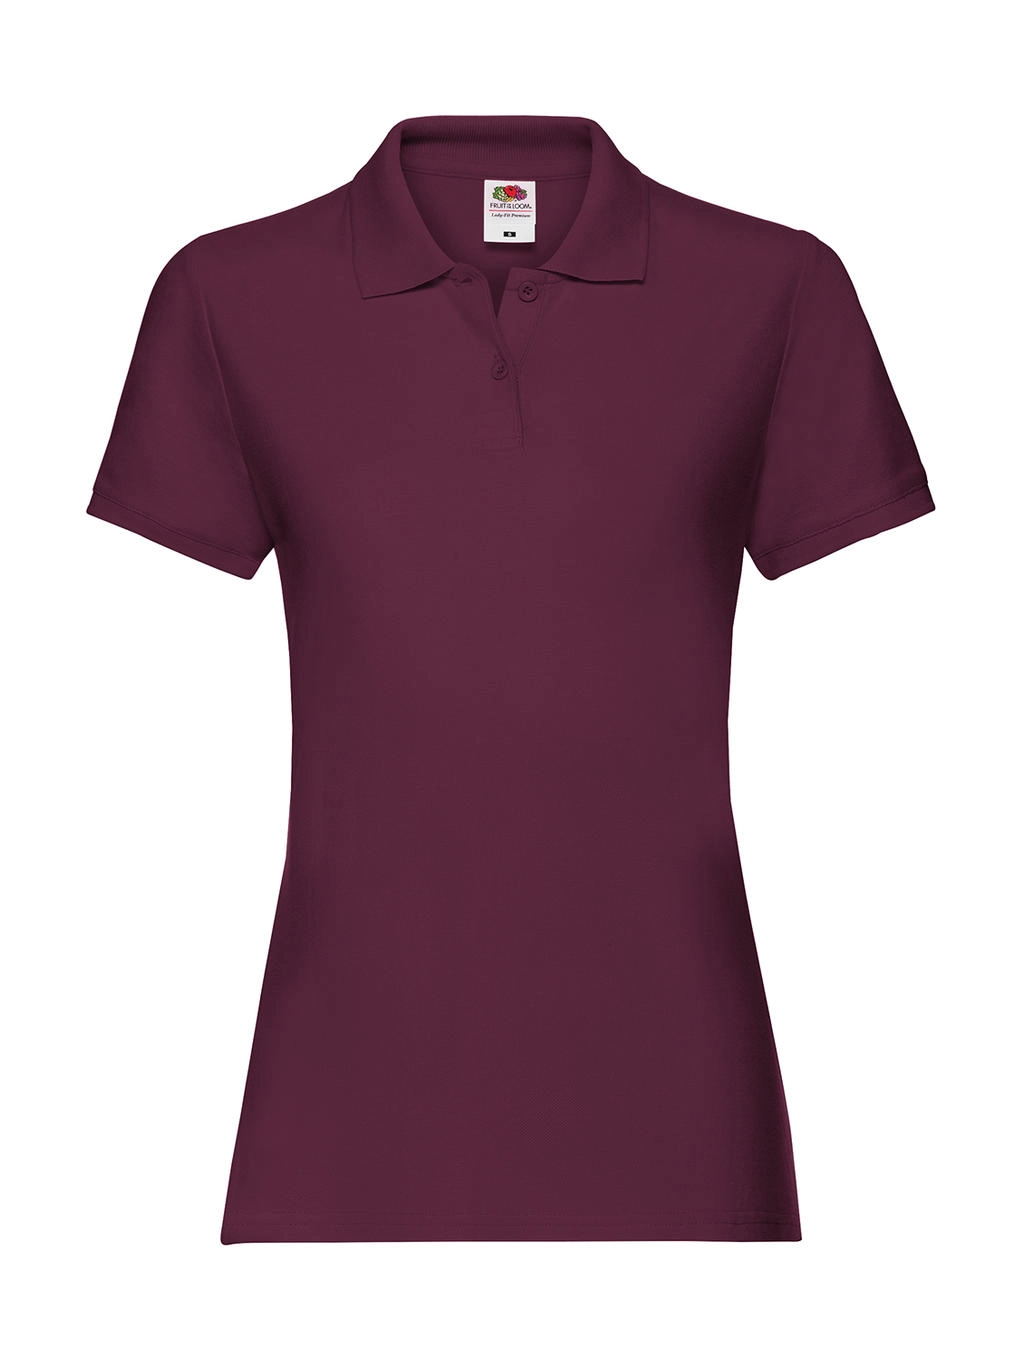 Ladies` Premium Polo zum Besticken und Bedrucken in der Farbe Burgundy mit Ihren Logo, Schriftzug oder Motiv.